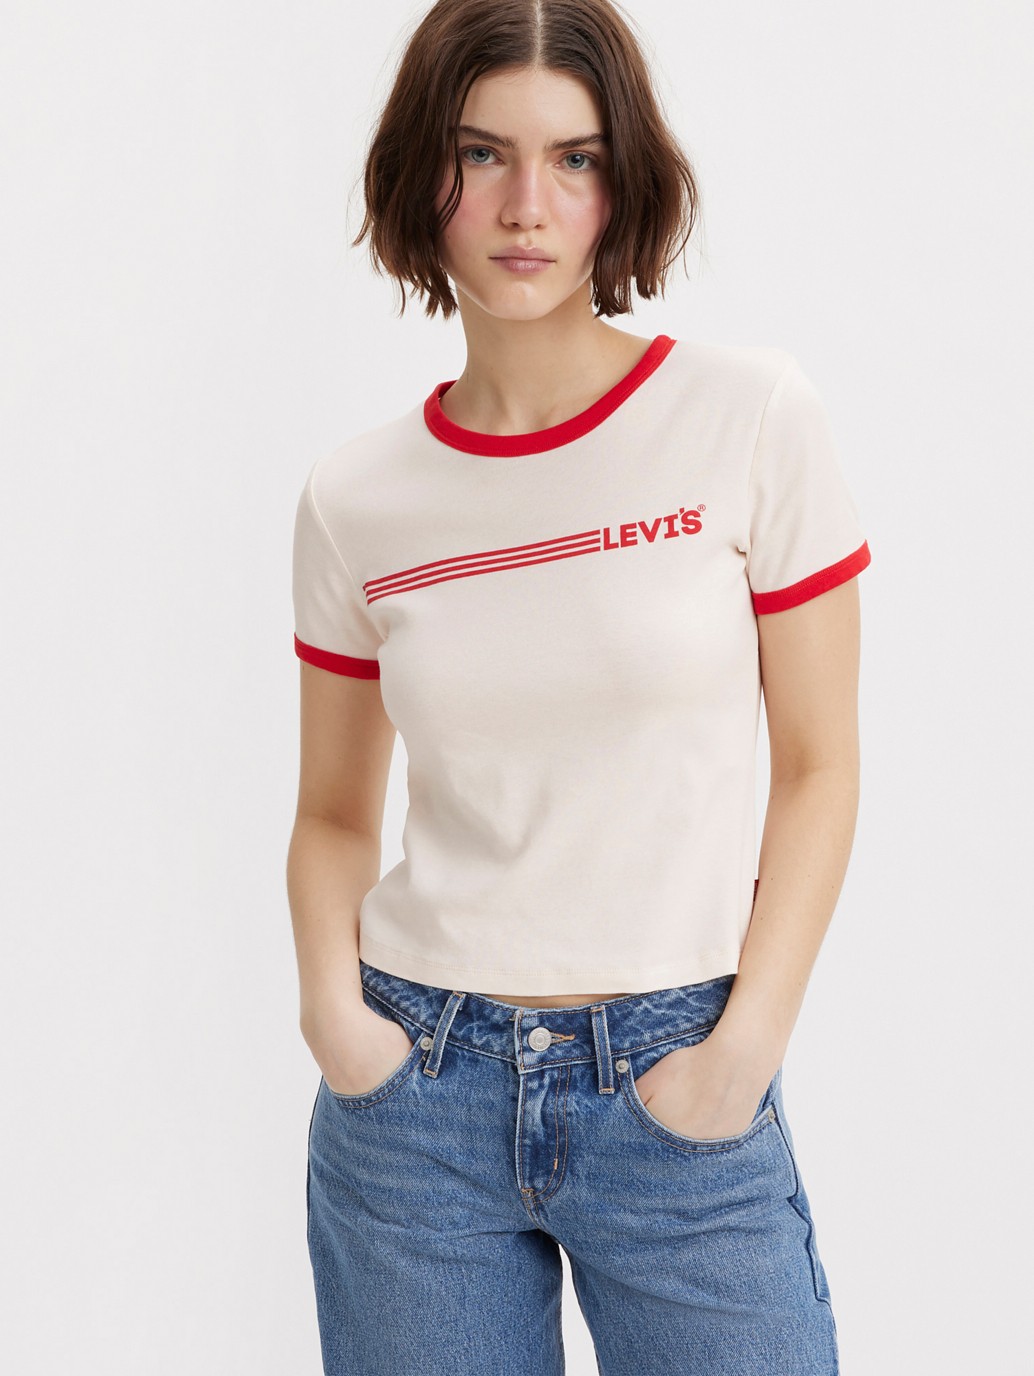 購買Levi's® 圖案包邊T-Shirt| 女裝| Levi's® 香港官方網上商店